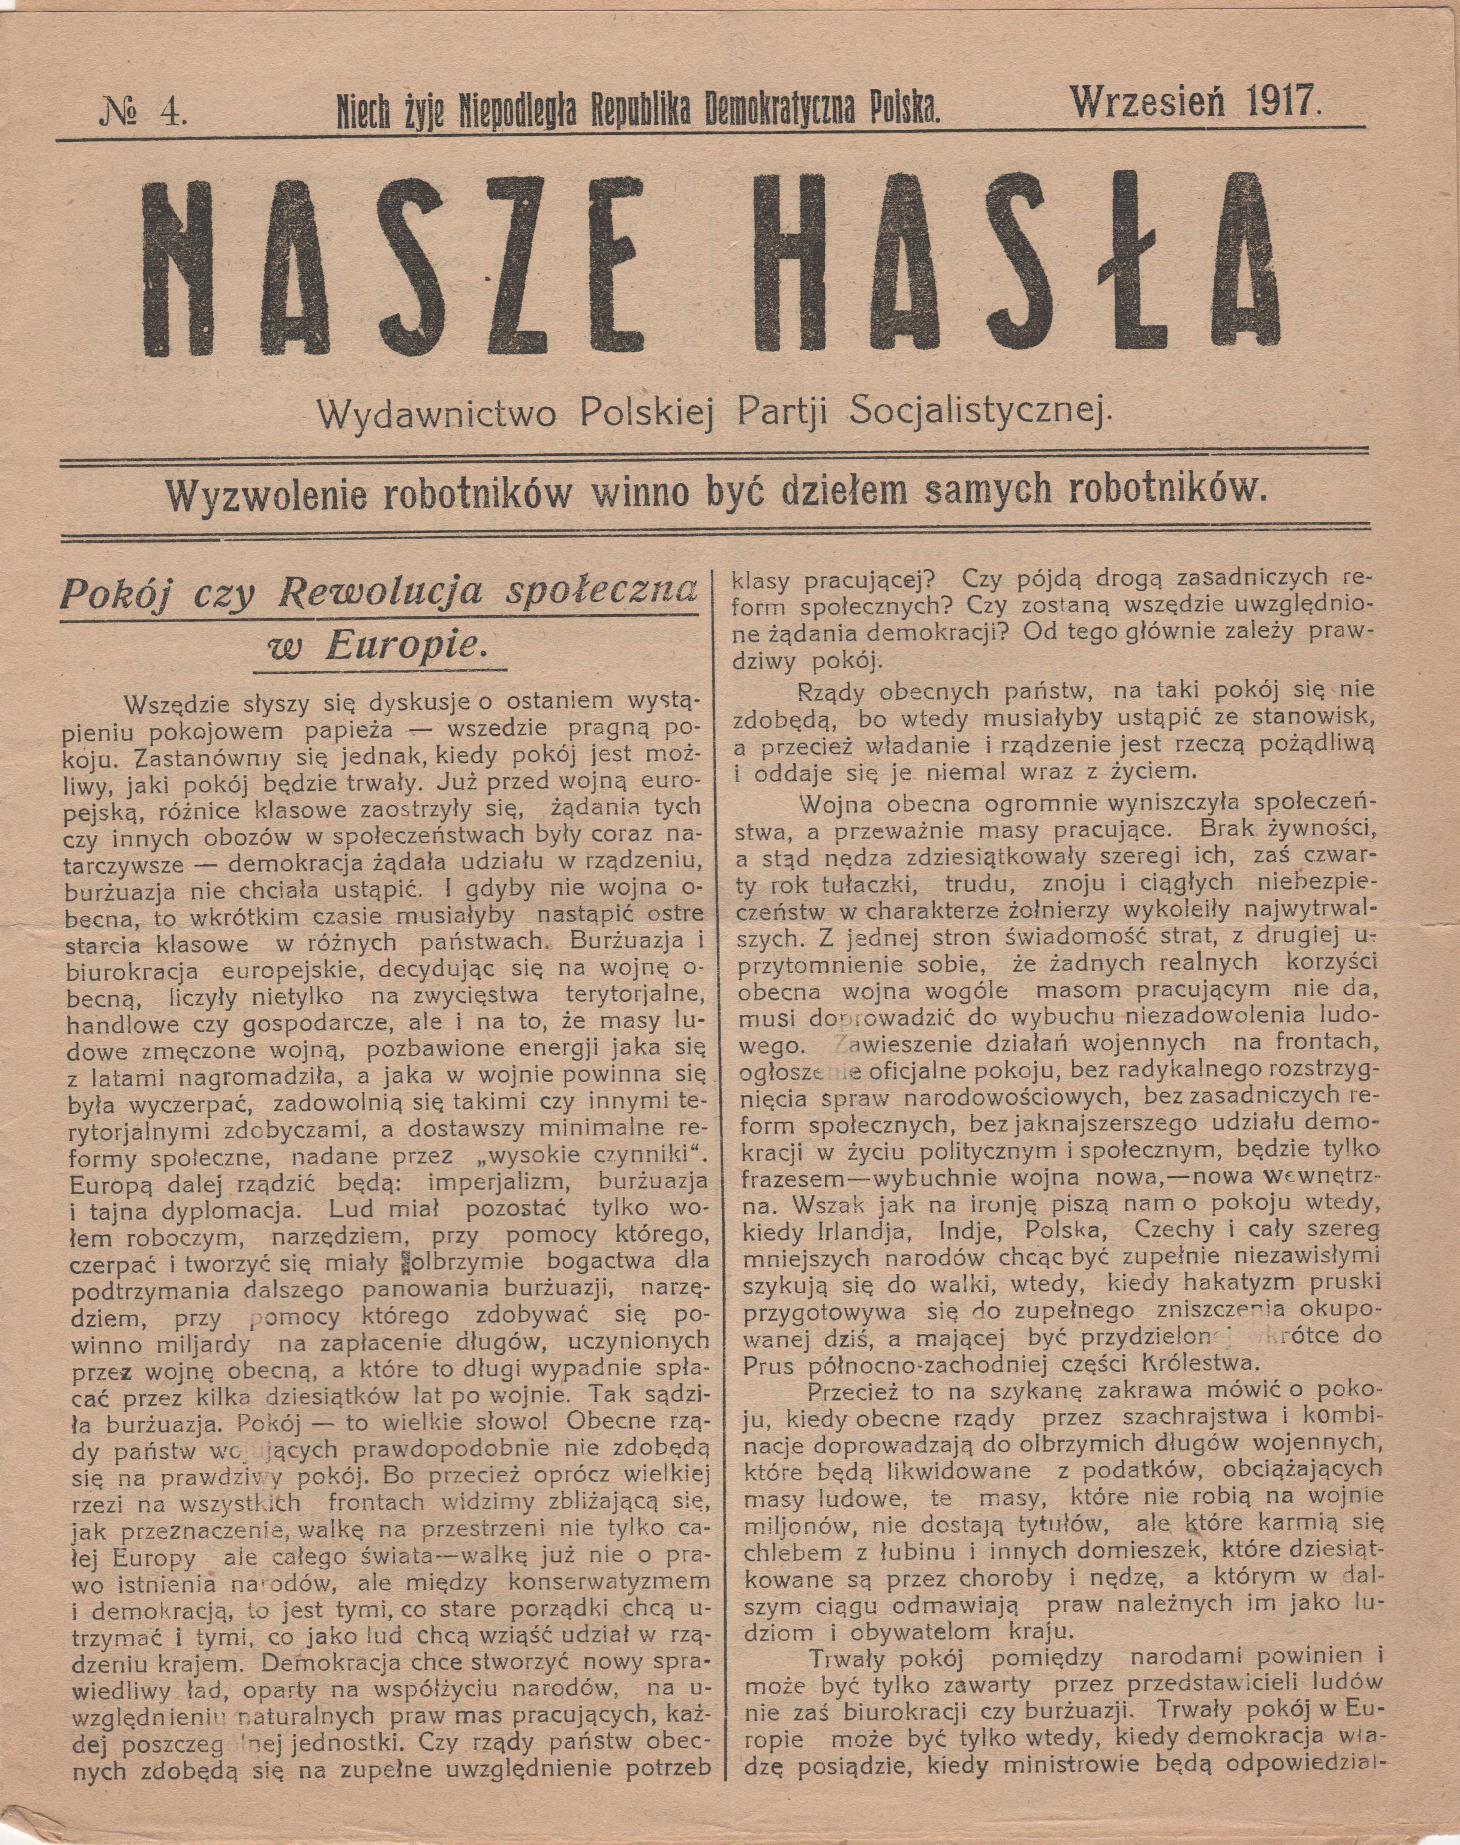 Газета "Nasze hasła" (укр. "Наші гасла")  № 4, 1917 